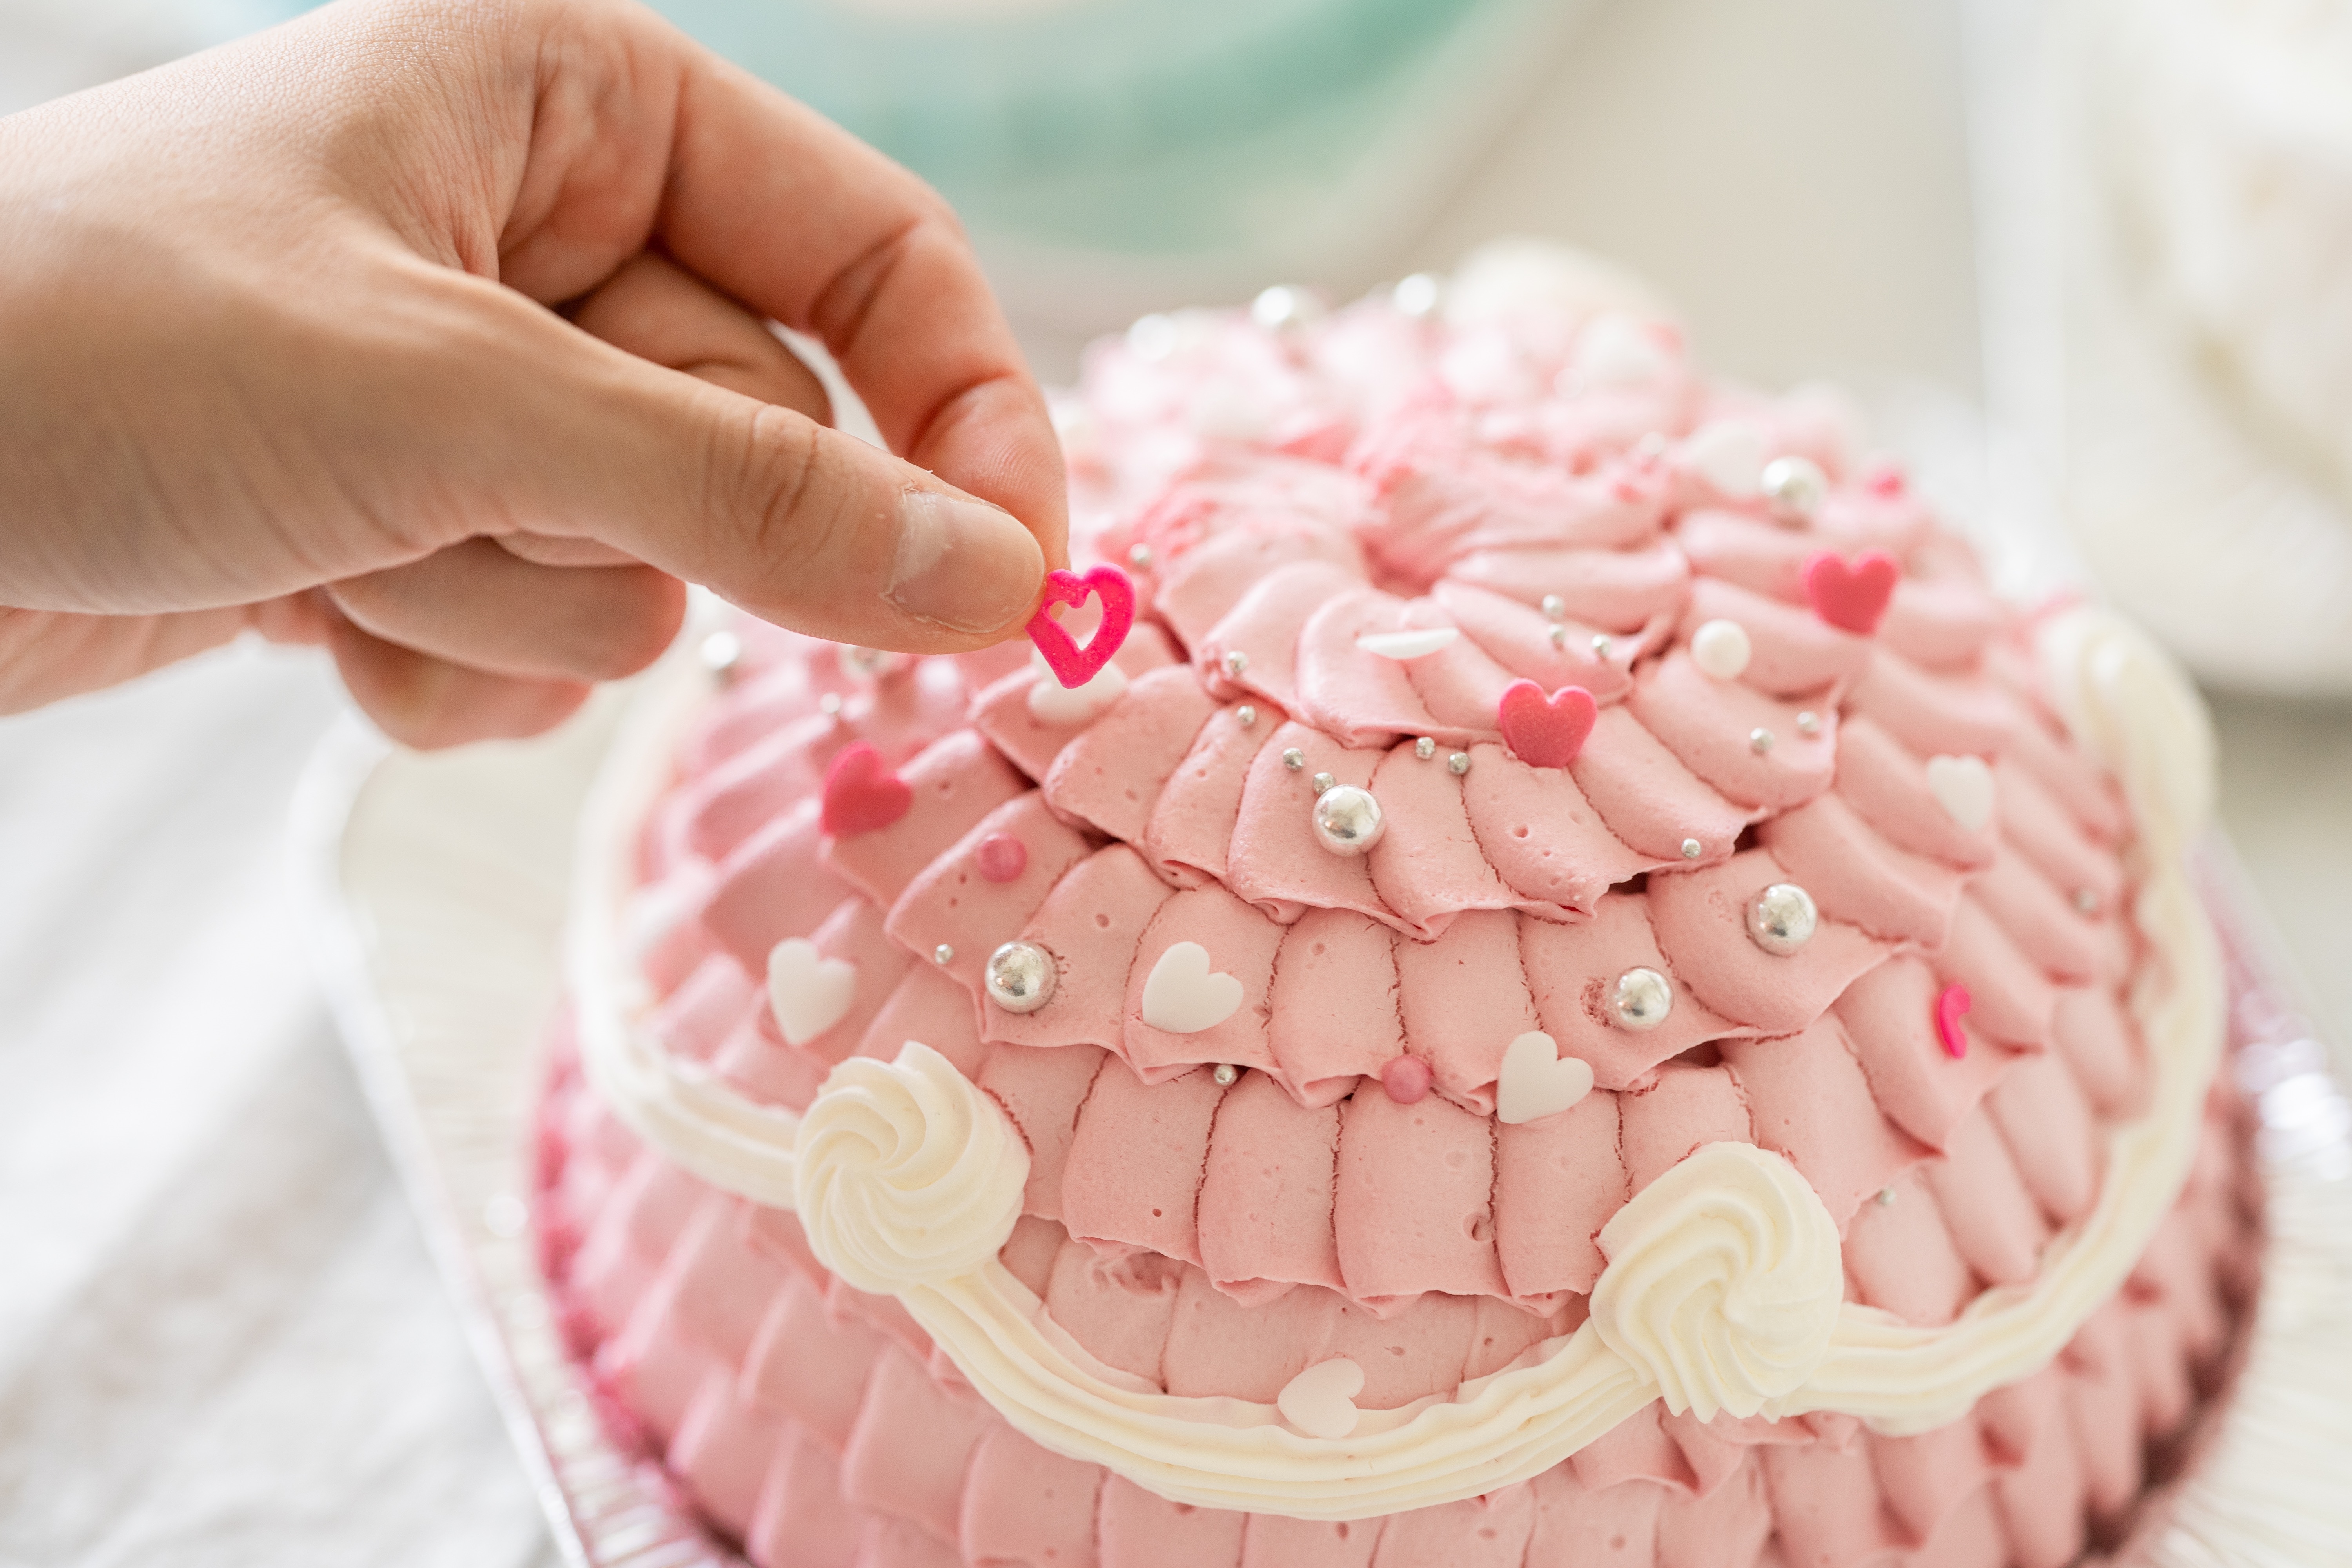 楽天市場 世界に一つだけ 自分で飾り付けのできる プリンセスケーキ 5号 送料無料 お人形が選べます 誕生日ケーキ バースデーケーキ ドールケーキ 誕生日ケーキのお店ケベック